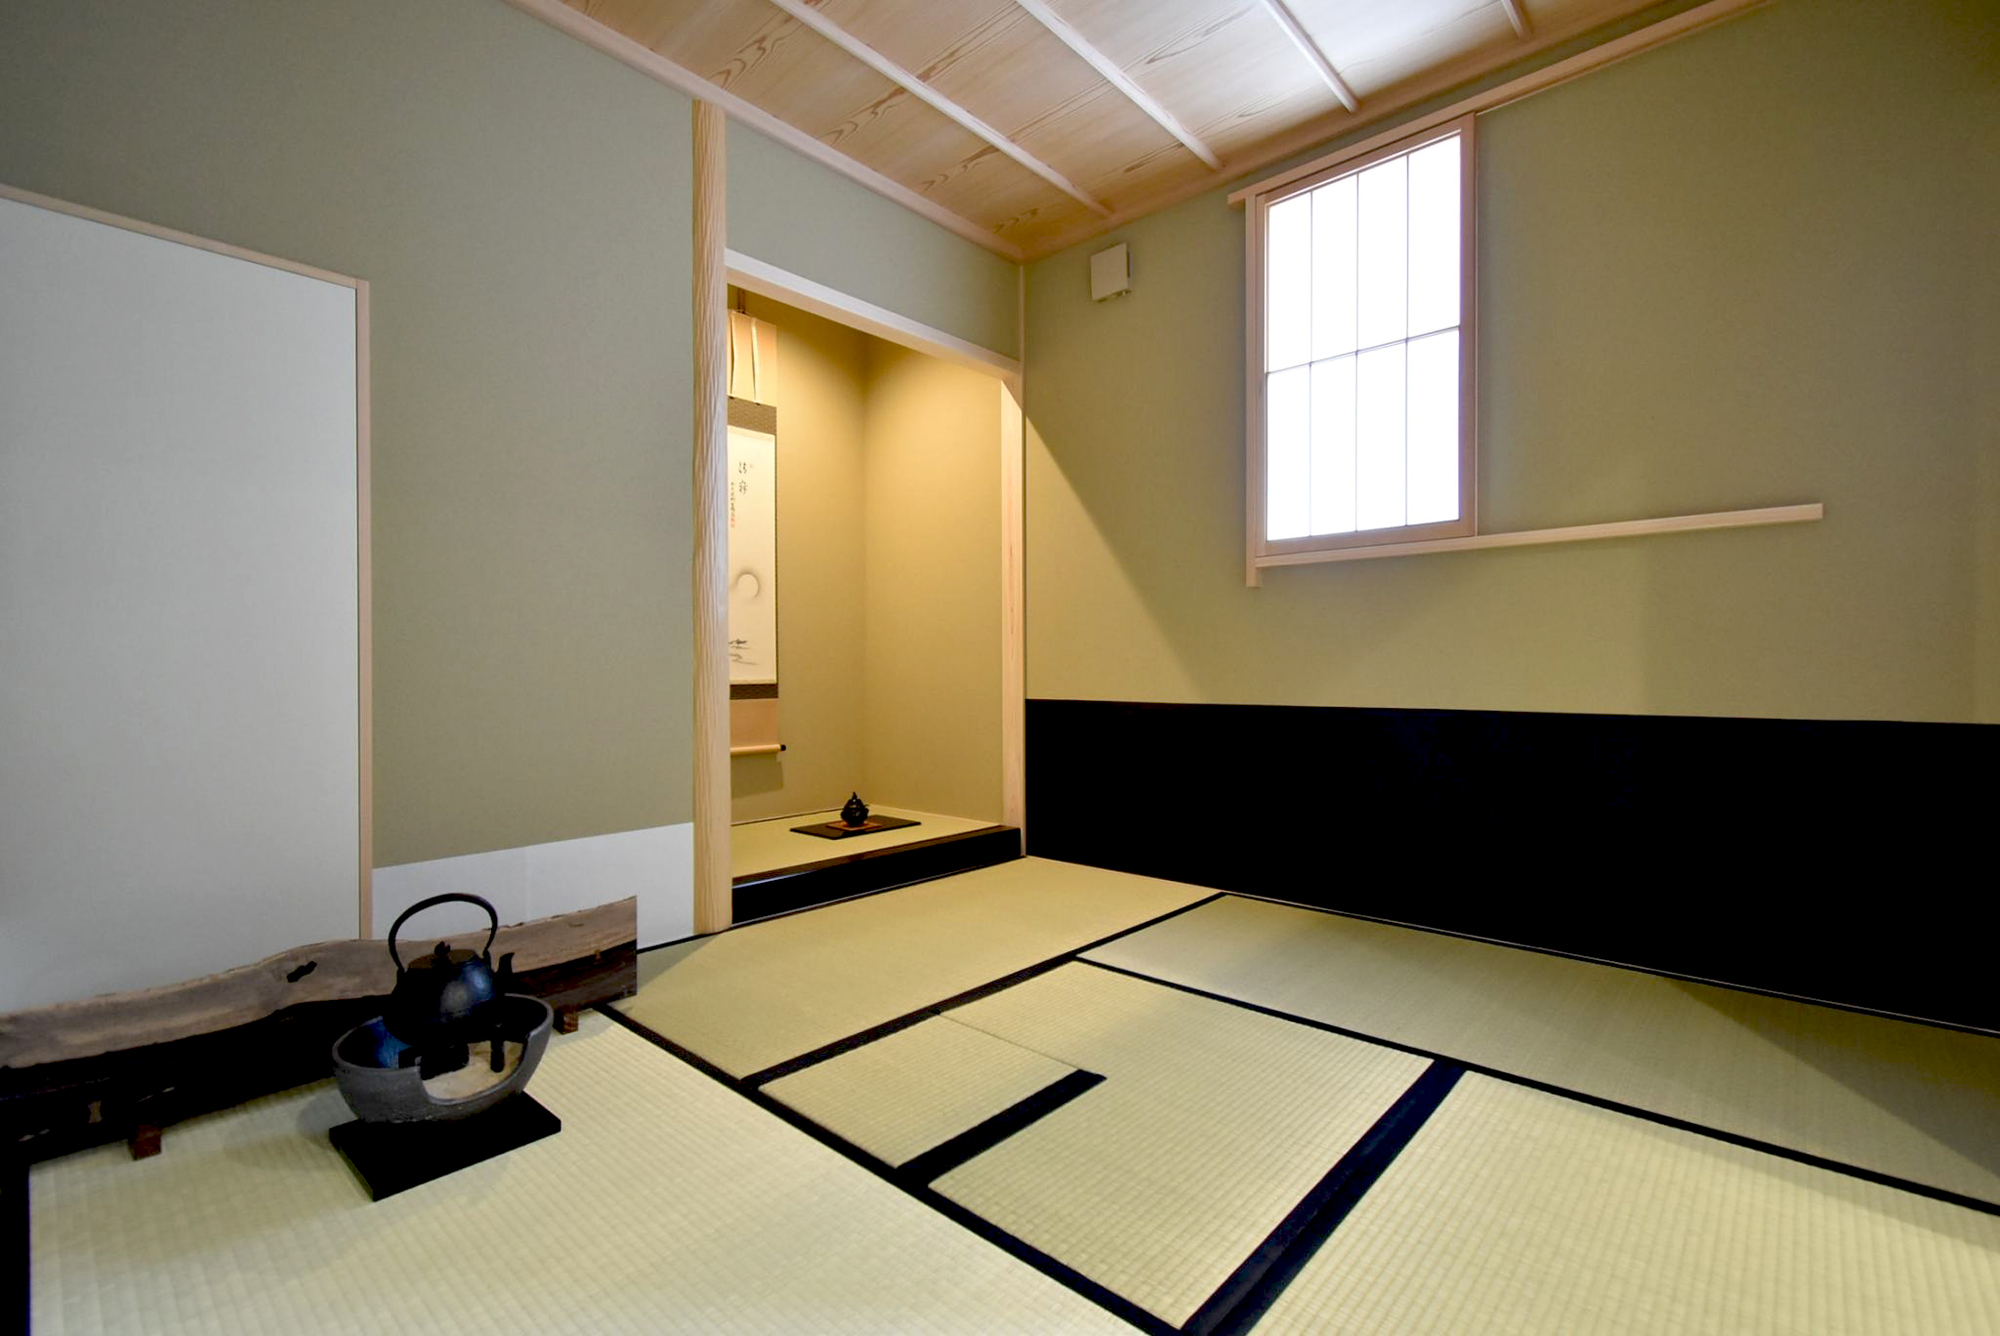 古き良き日本の和室を再現した。 茶室に入るとまず床の前で掛け軸や生け花を楽しんでいただきたい。 おもてなしを最大限に表現した和の空間。